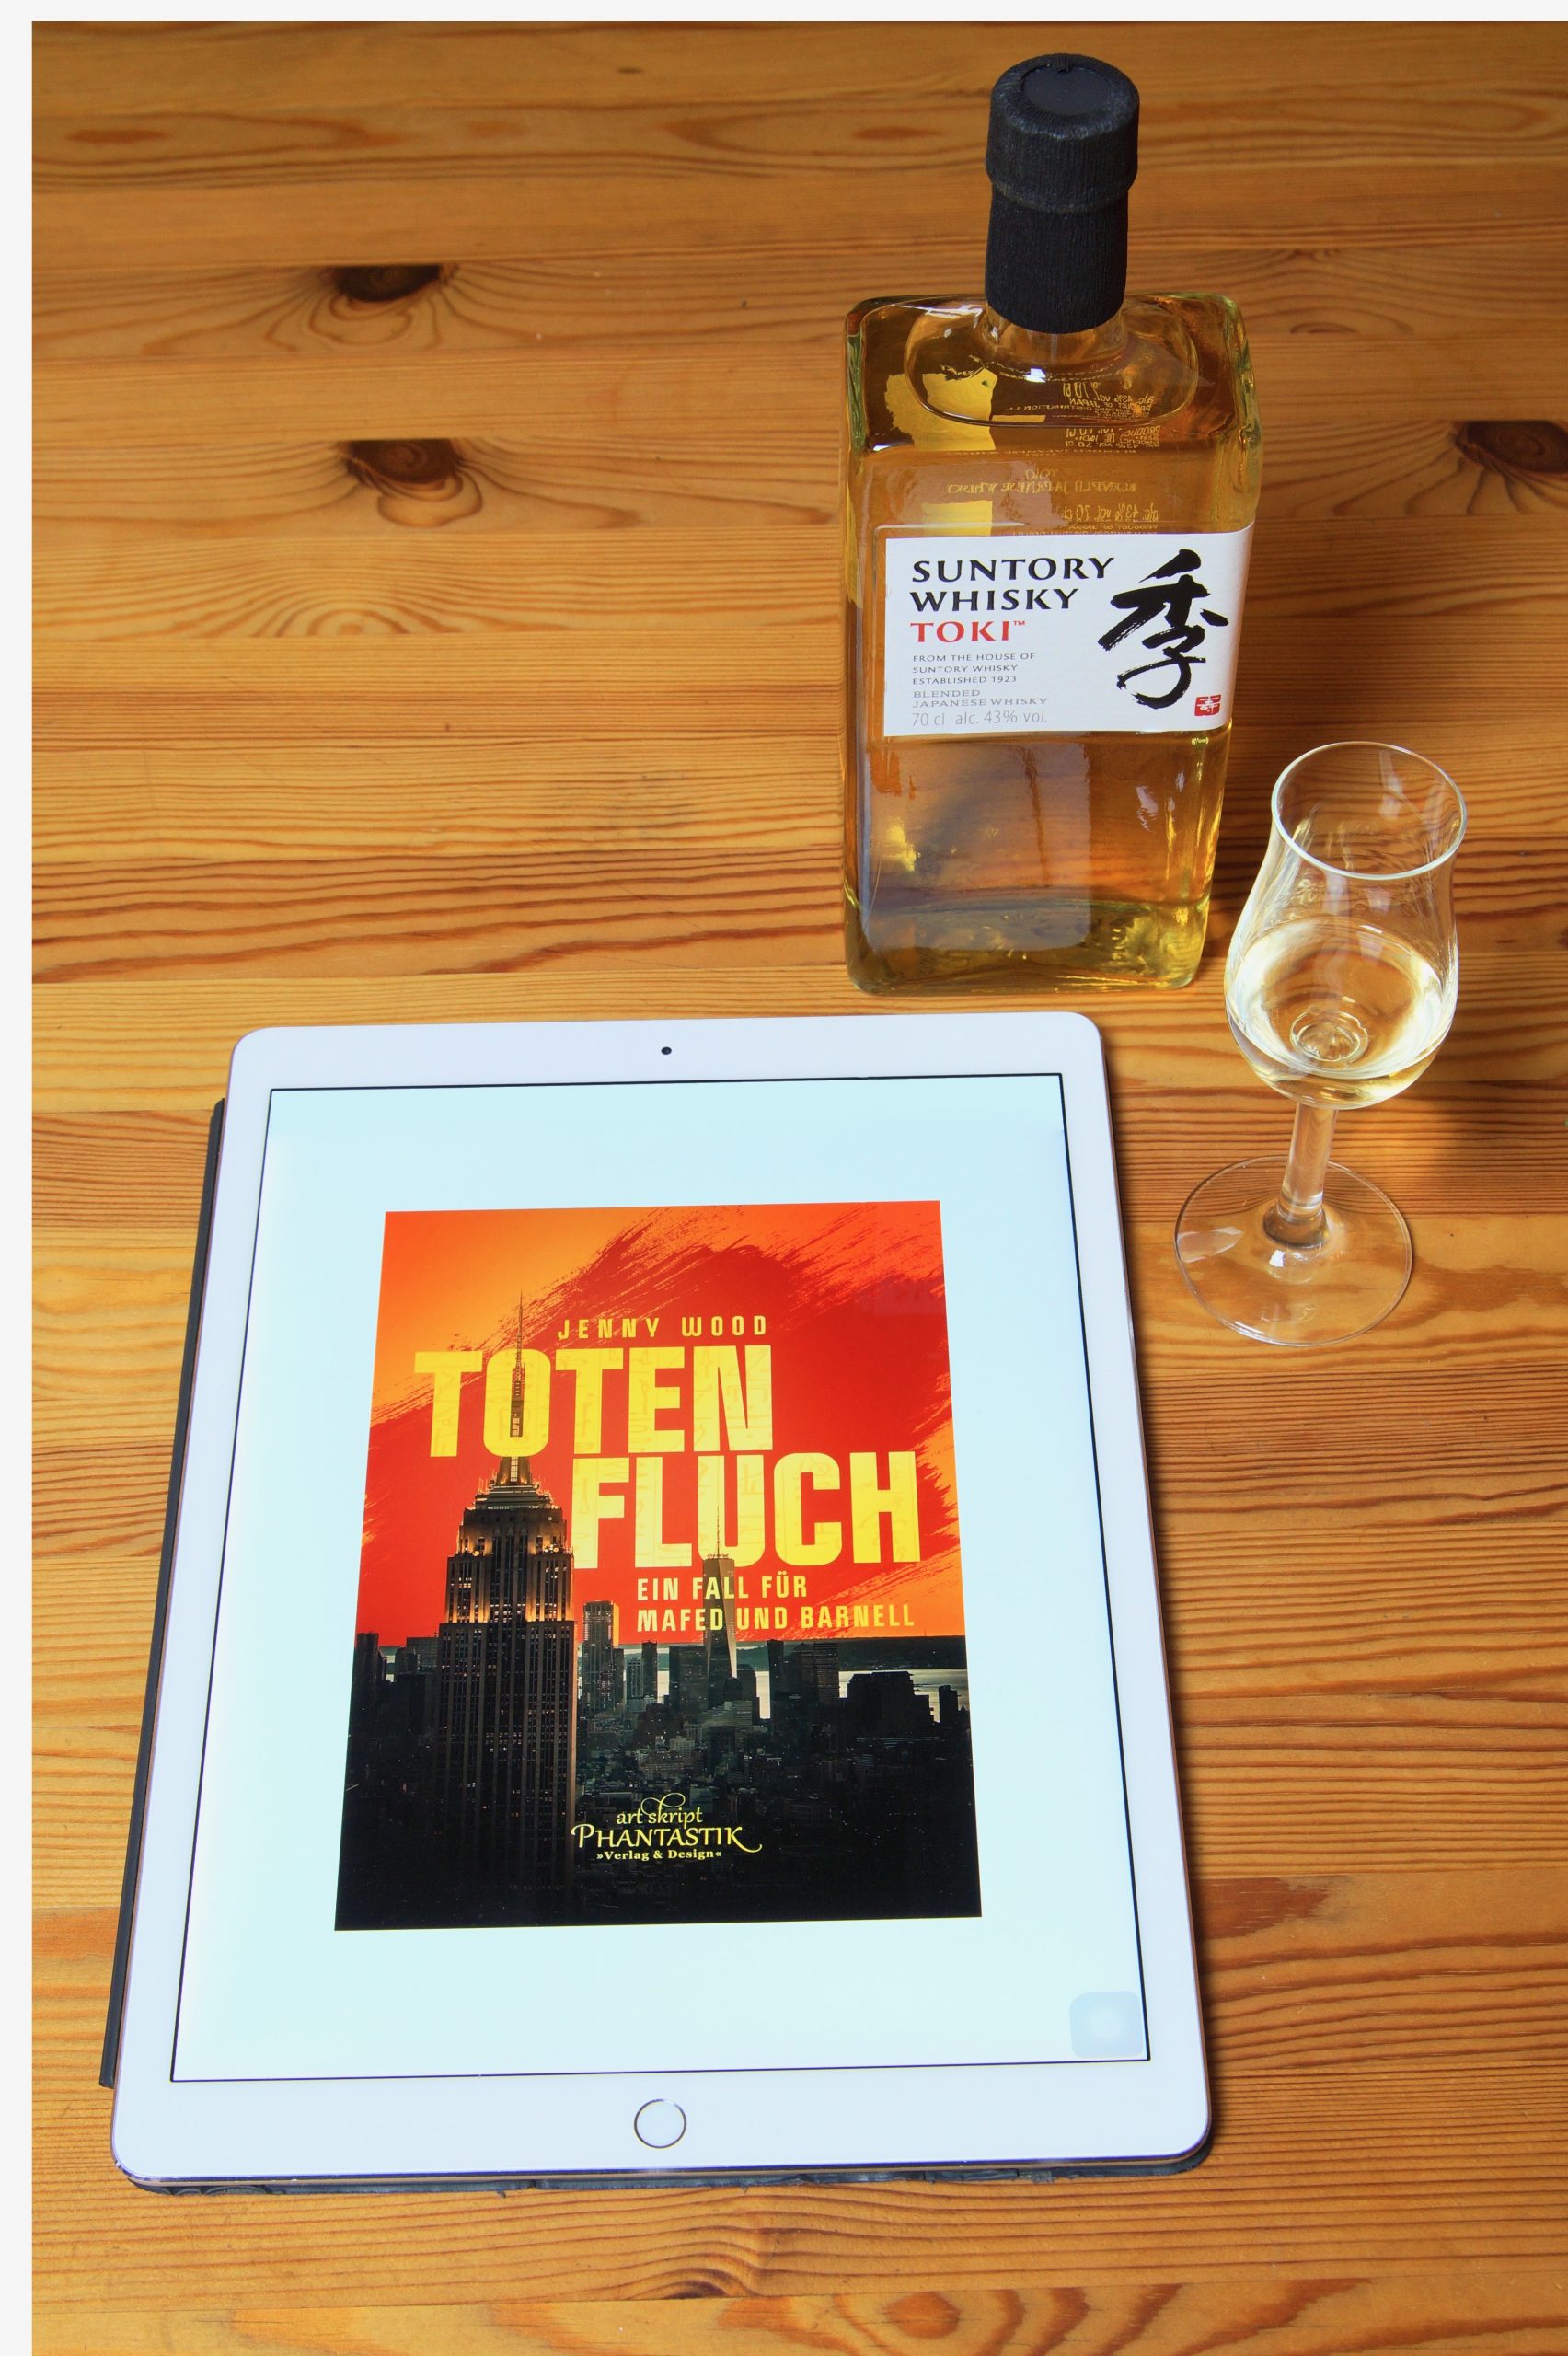 Eine Flasche TOKI Blend Whisky von Suntory nebst Glas und ein Ipad mit dem Cover von Totenfluch